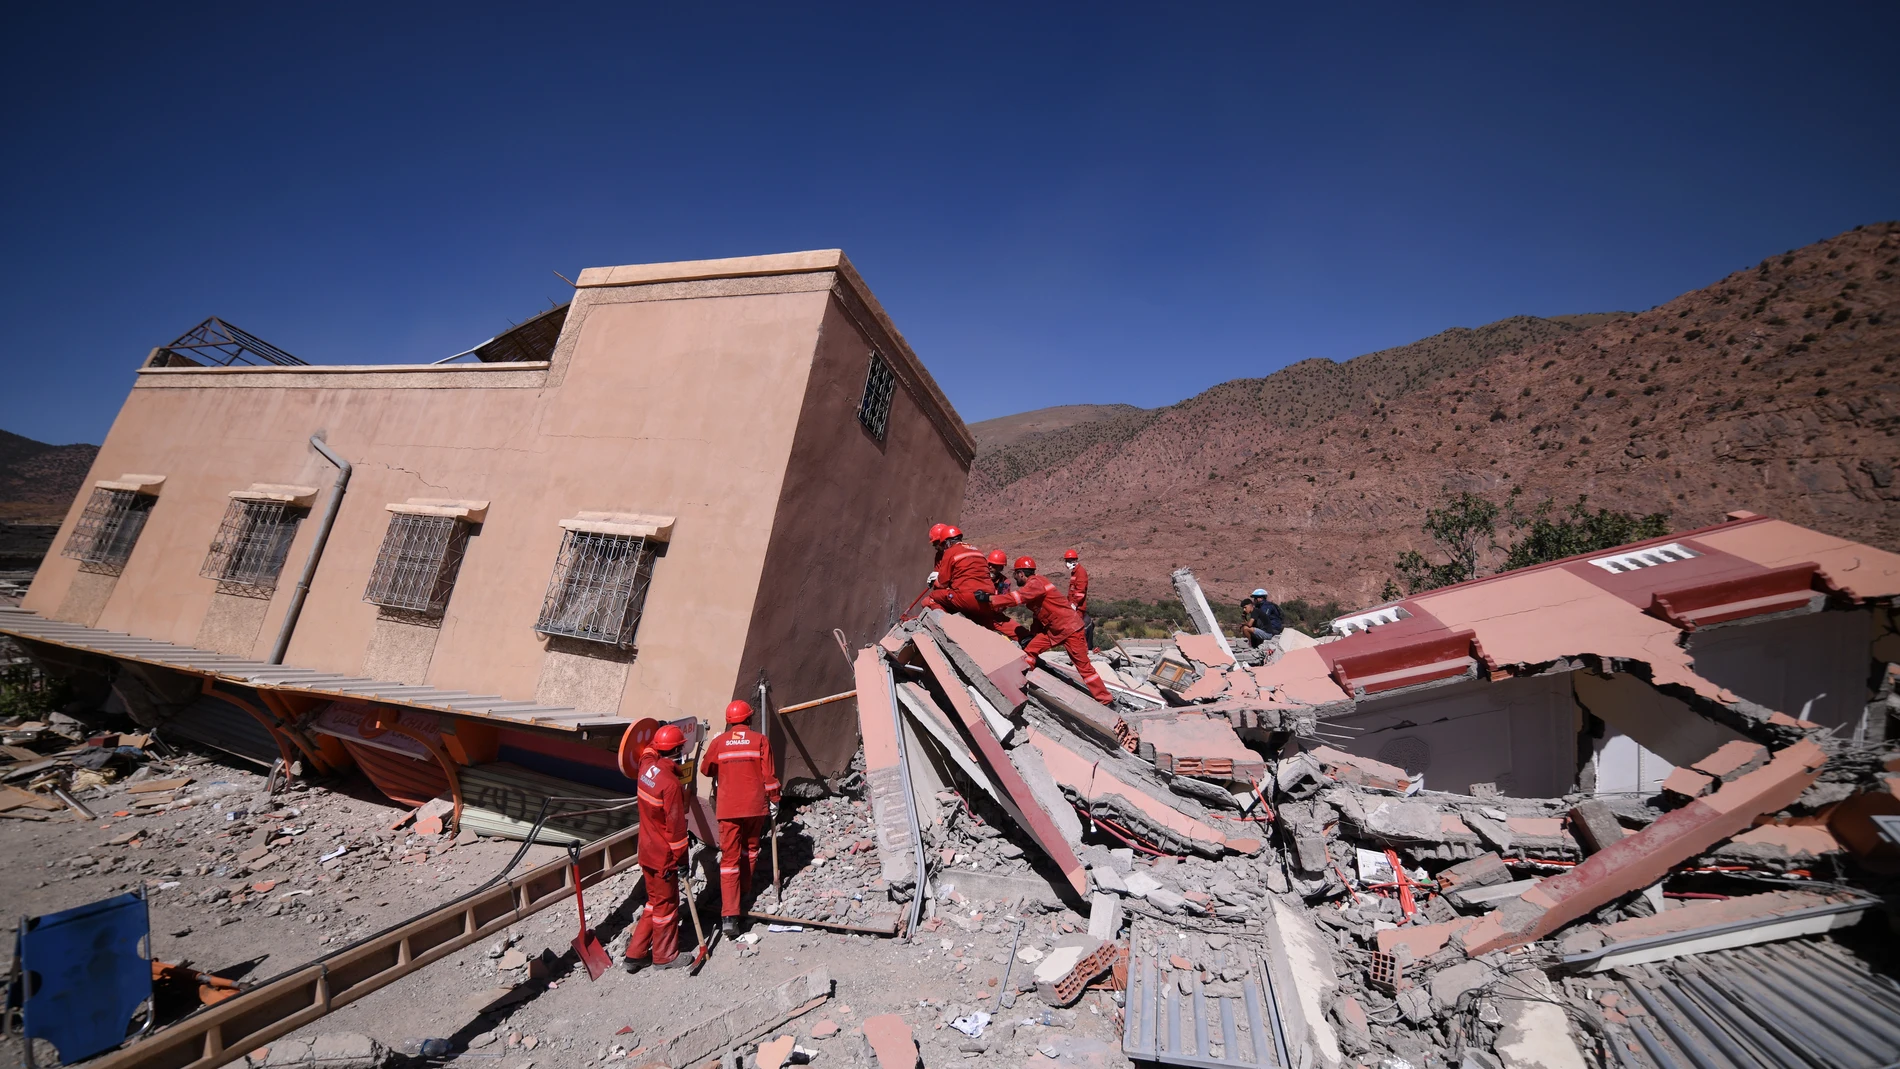 Cruz Roja dice que la situación en Marruecos es "compleja" por la dificultad de acceso a algunas zonas del país